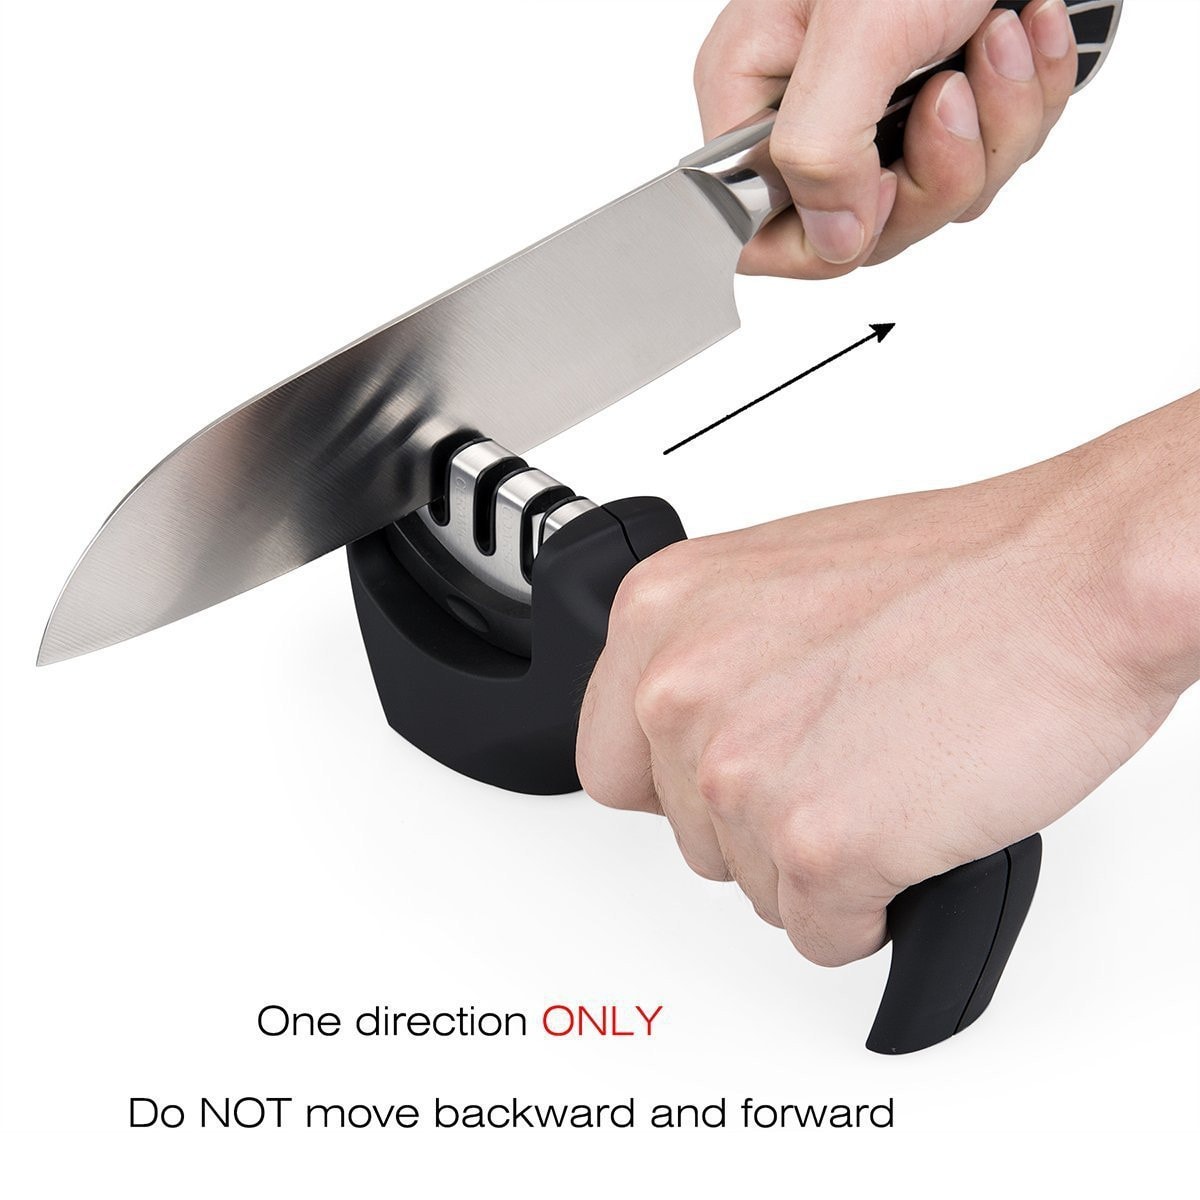 LIGHTSMAX New Upgraded Lightsmax Kitchen Knife Sharpener- 3-stage